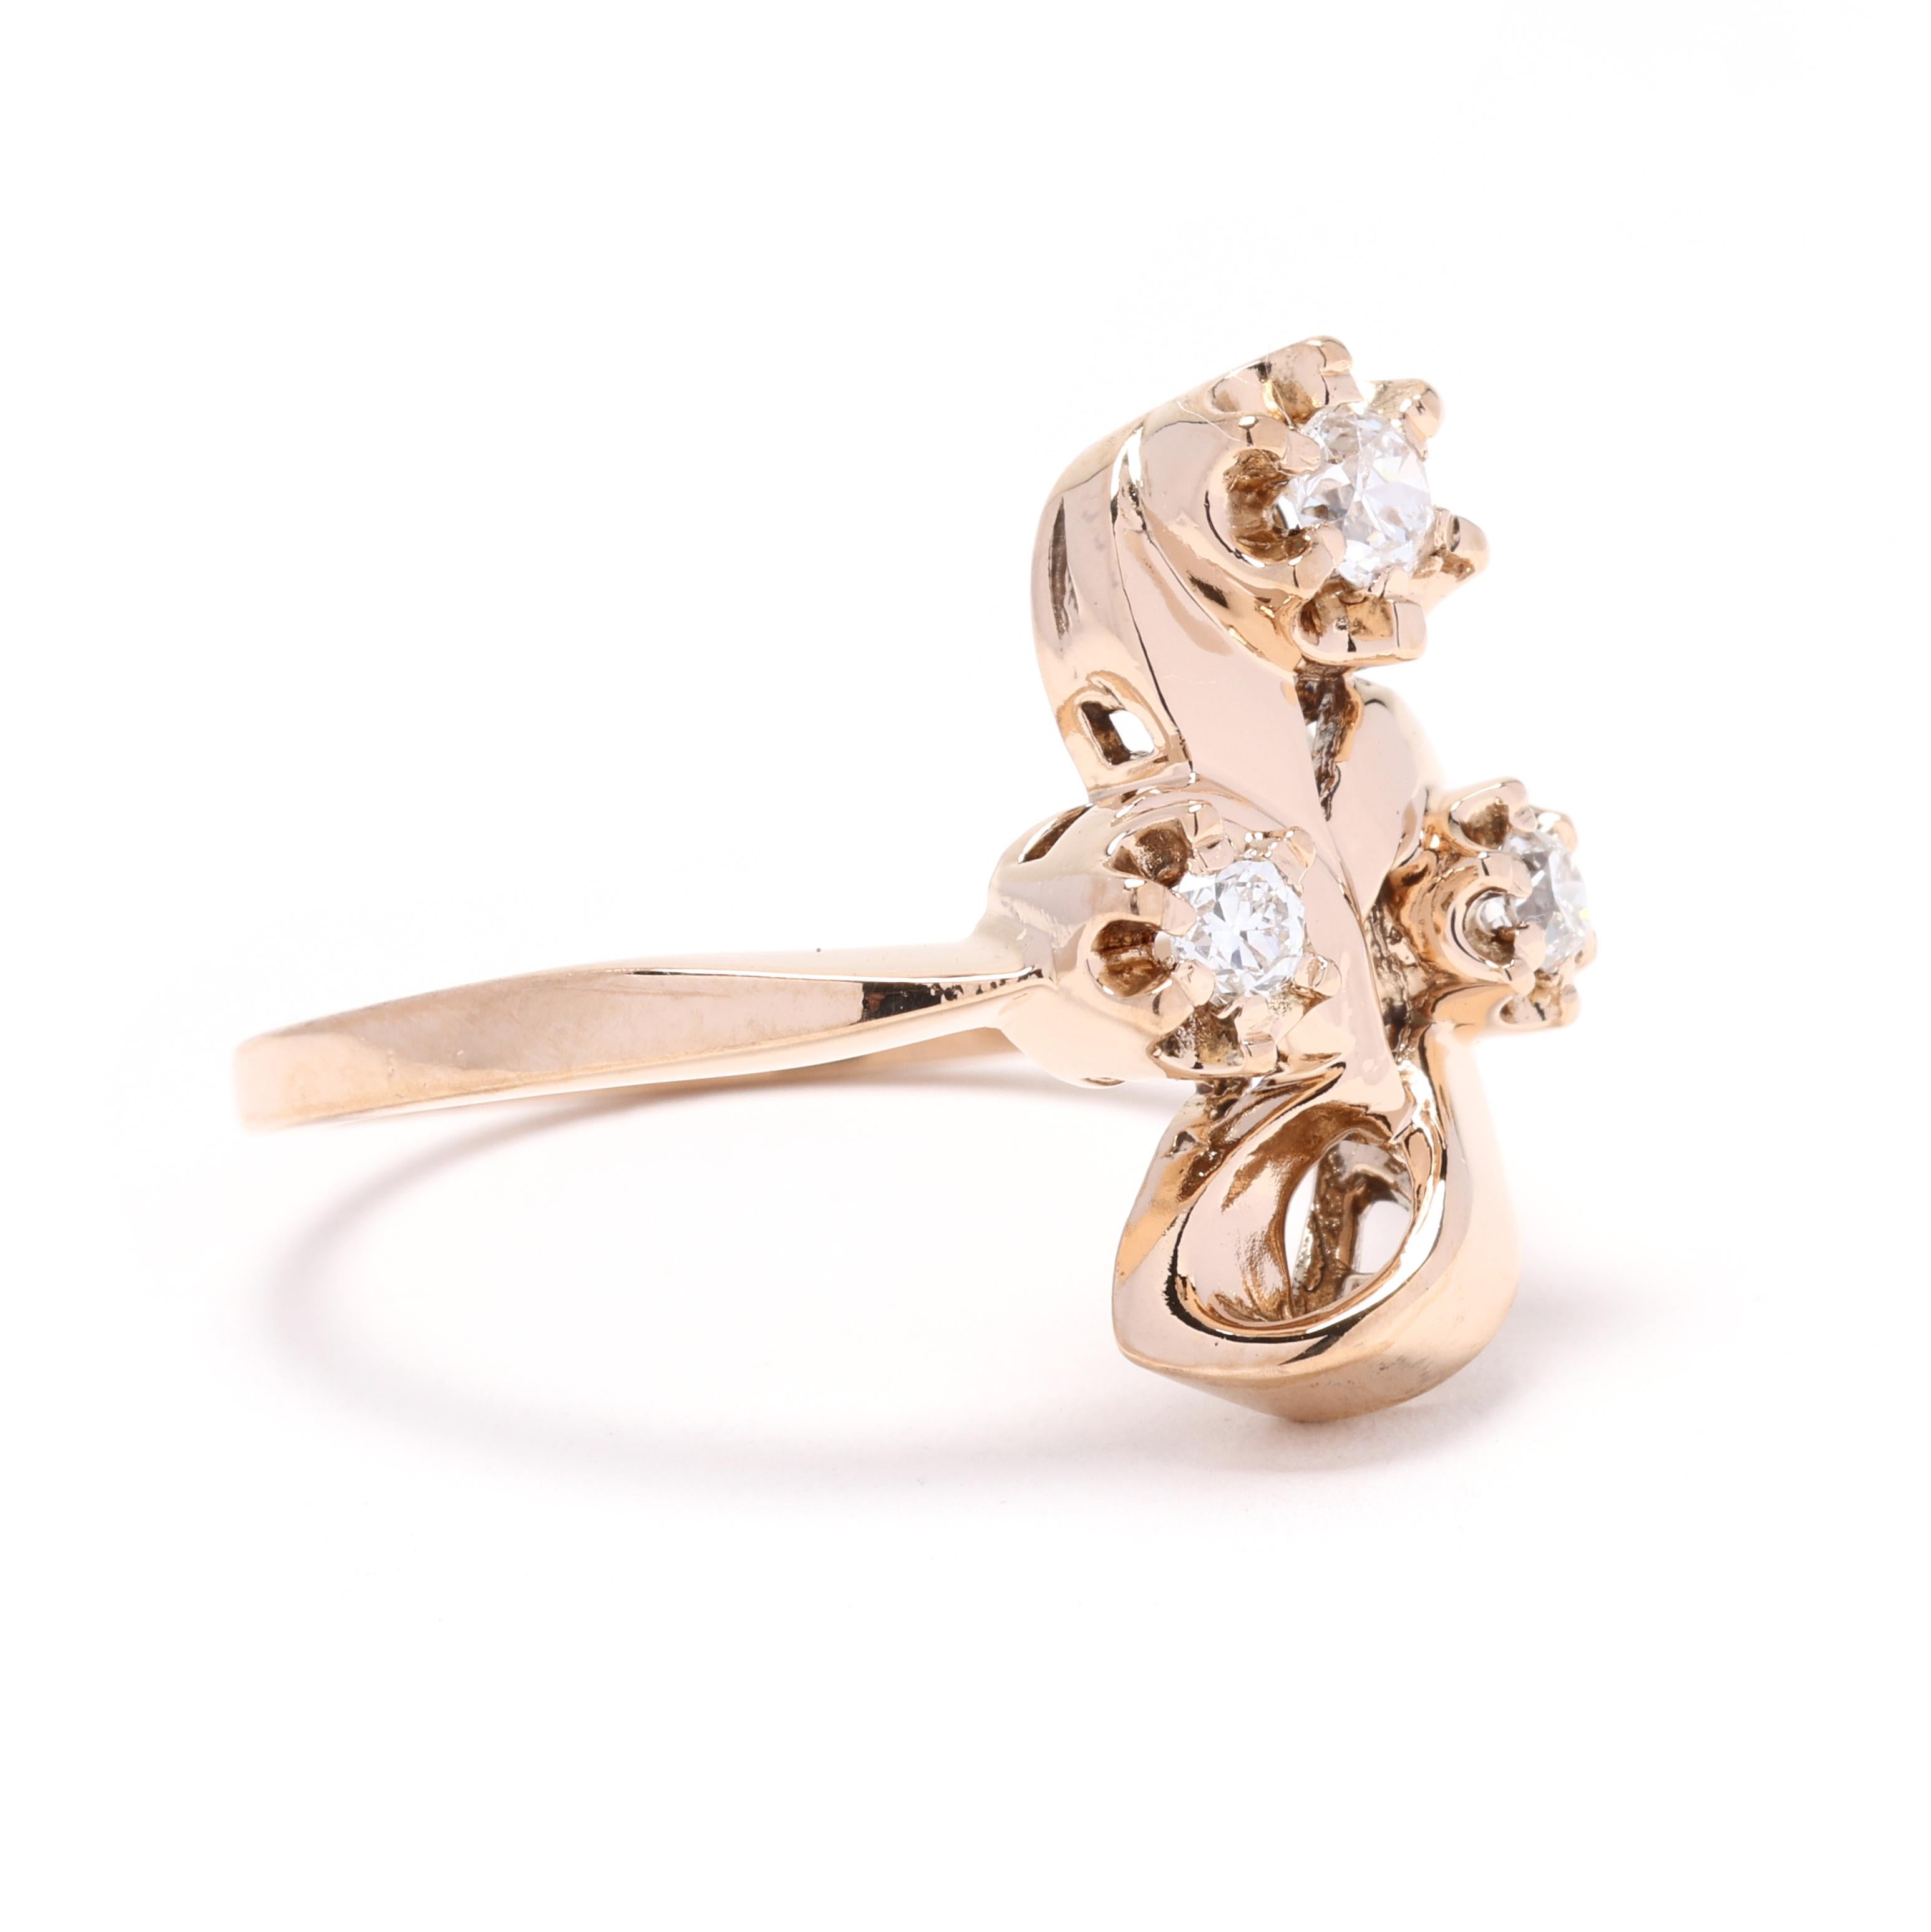 Dieser Ring mit einem Blumenbouquet aus Diamanten im Vintage-Stil ist ein zeitloses Schmuckstück, das mit Sicherheit für Aufsehen sorgt. Die Diamanten haben ein Gesamtgewicht von 0,22 ct und sind sorgfältig gefasst, um ihre Brillanz zu betonen. Die